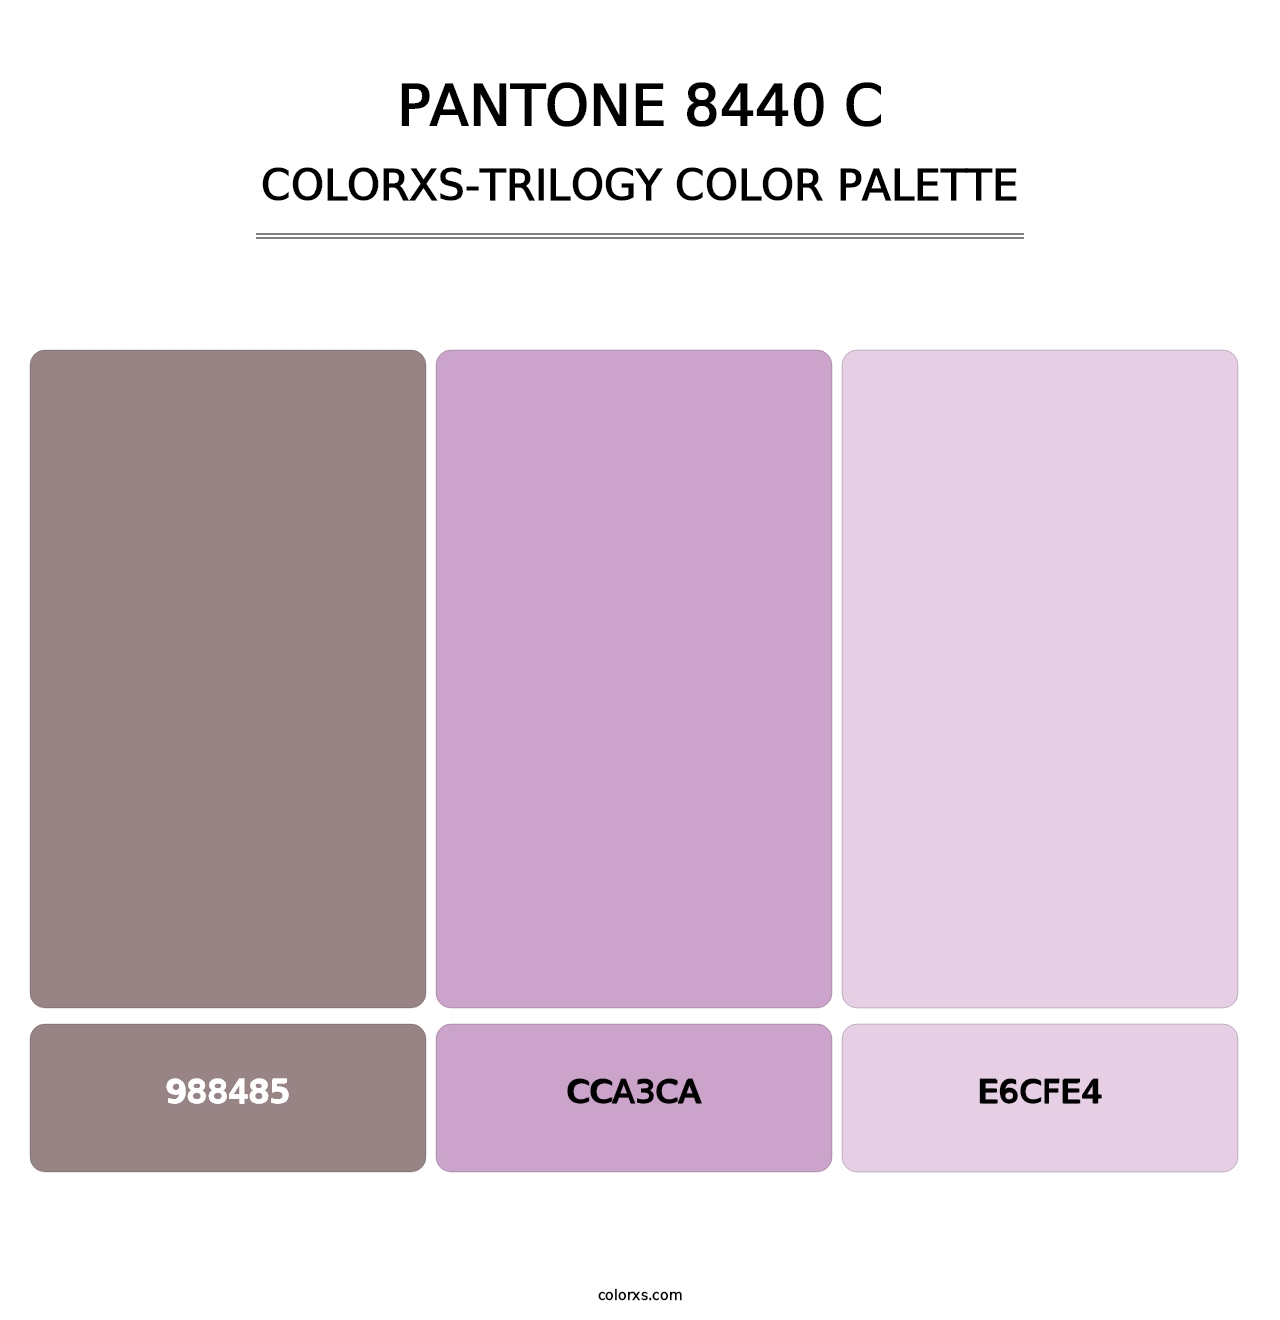 PANTONE 8440 C - Colorxs Trilogy Palette